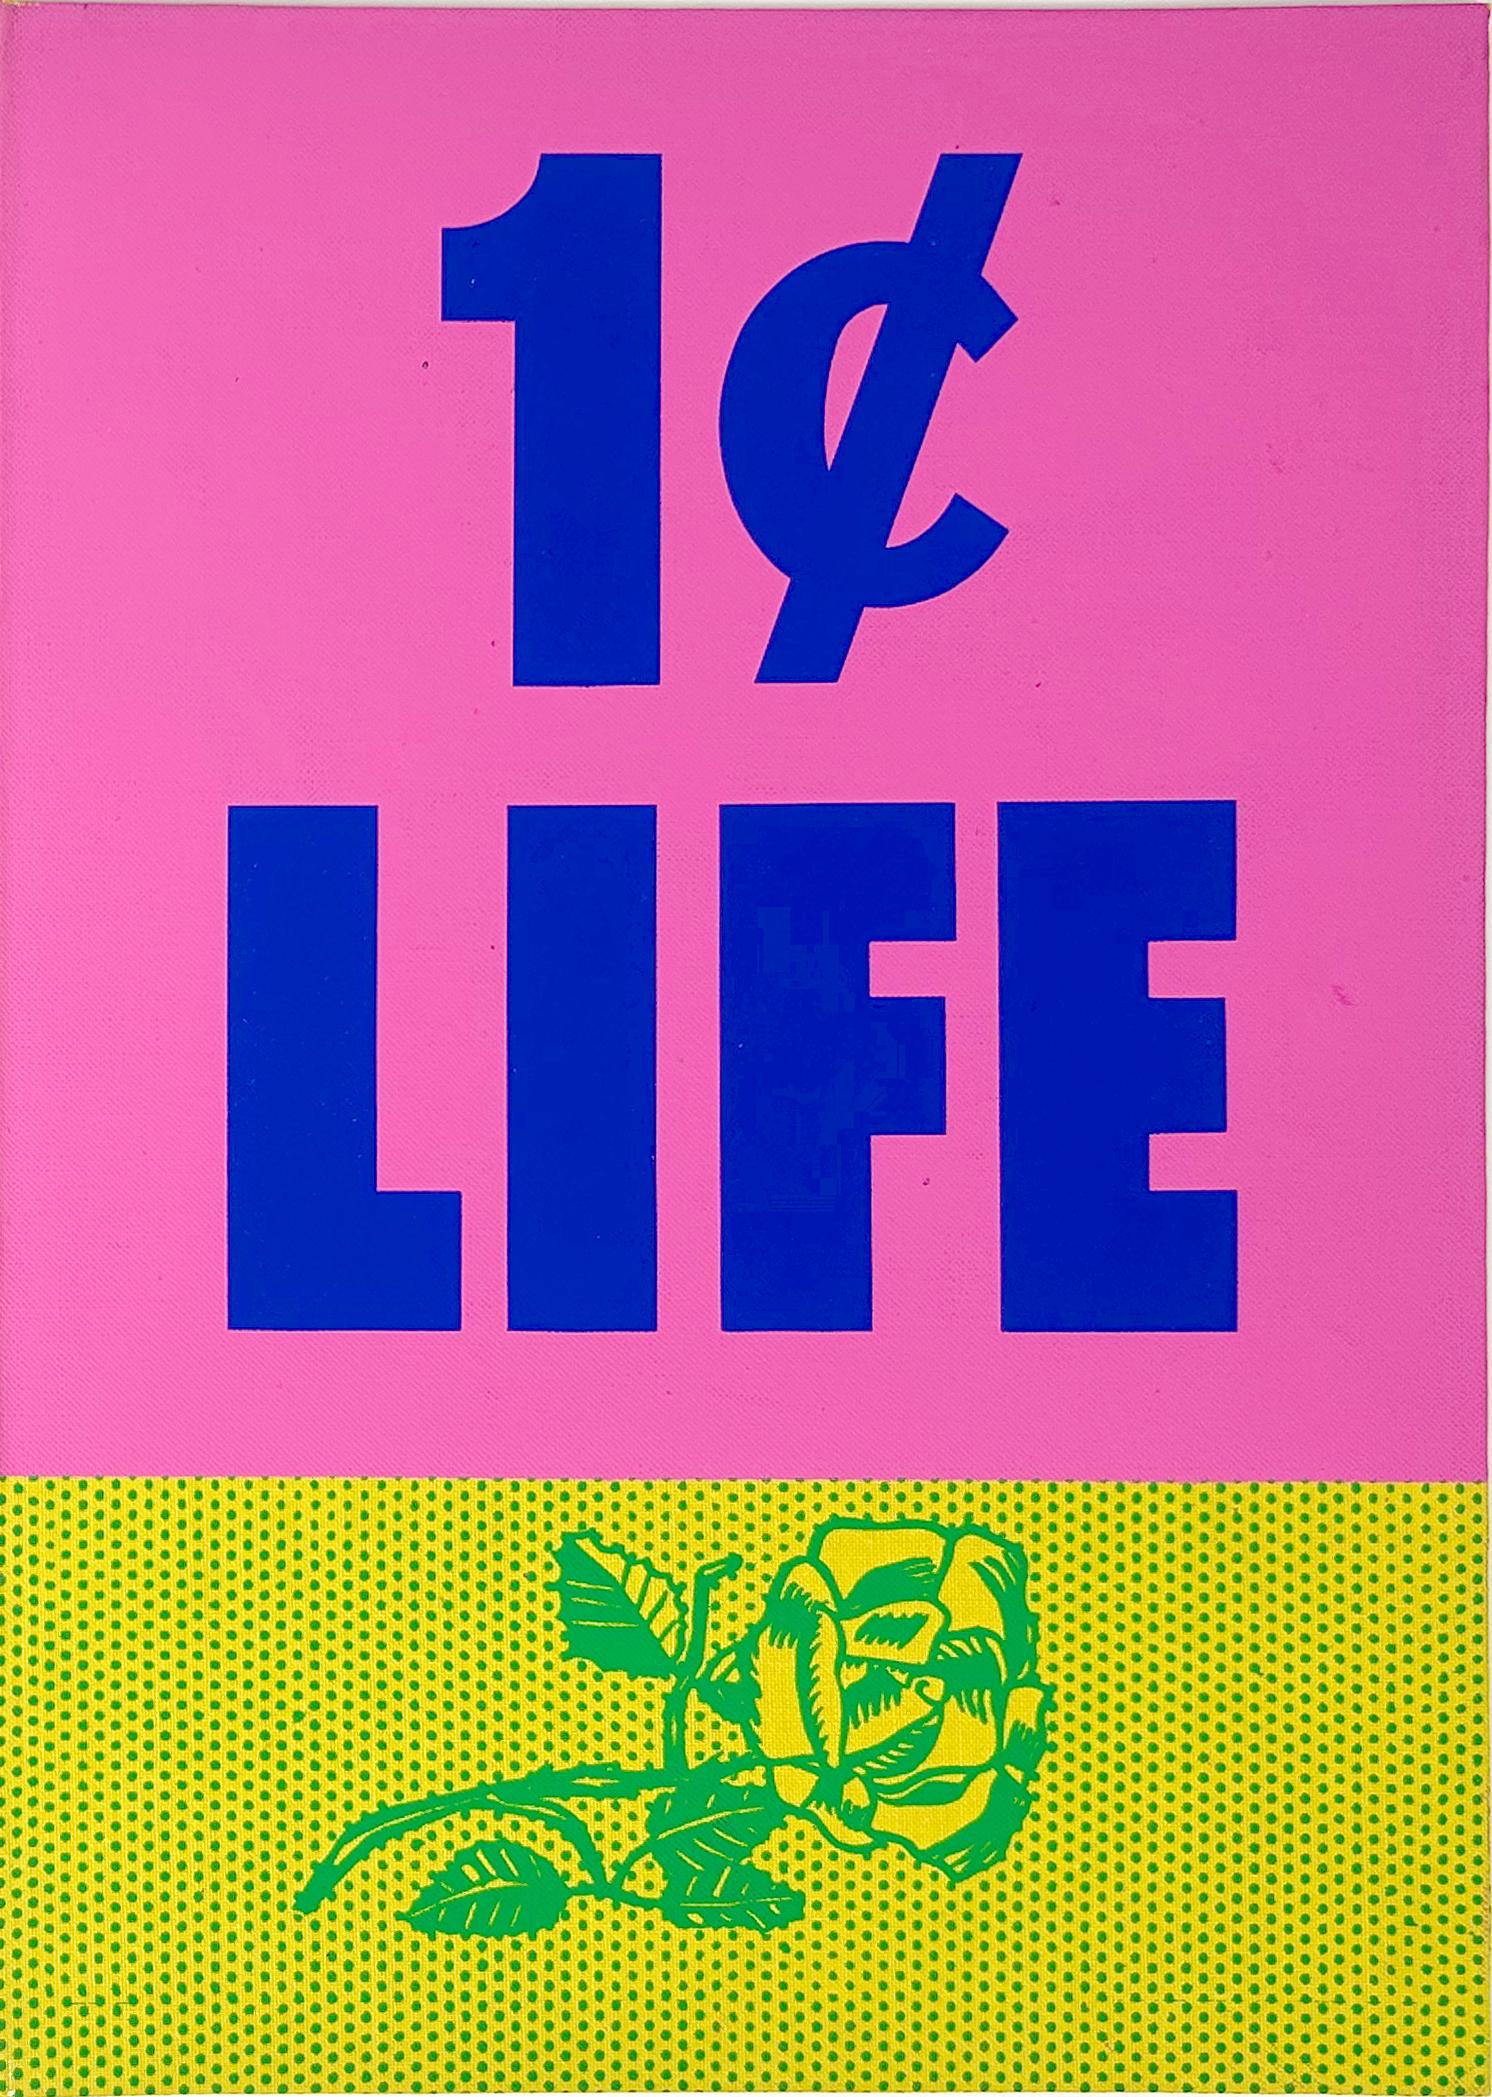 Künstler: Roy Lichtenstein
Titel: Rose, Umschlag von 1 Cent Life
(Rose) Siebdruck in Grün auf gelbem Leinen und (1 Cent Leben) Siebdruck in Rosa auf blauem Schriftzug auf dem Karton des ungebundenen Buches
Jahr: 1964
Medium: Siebdruck auf Leinen auf